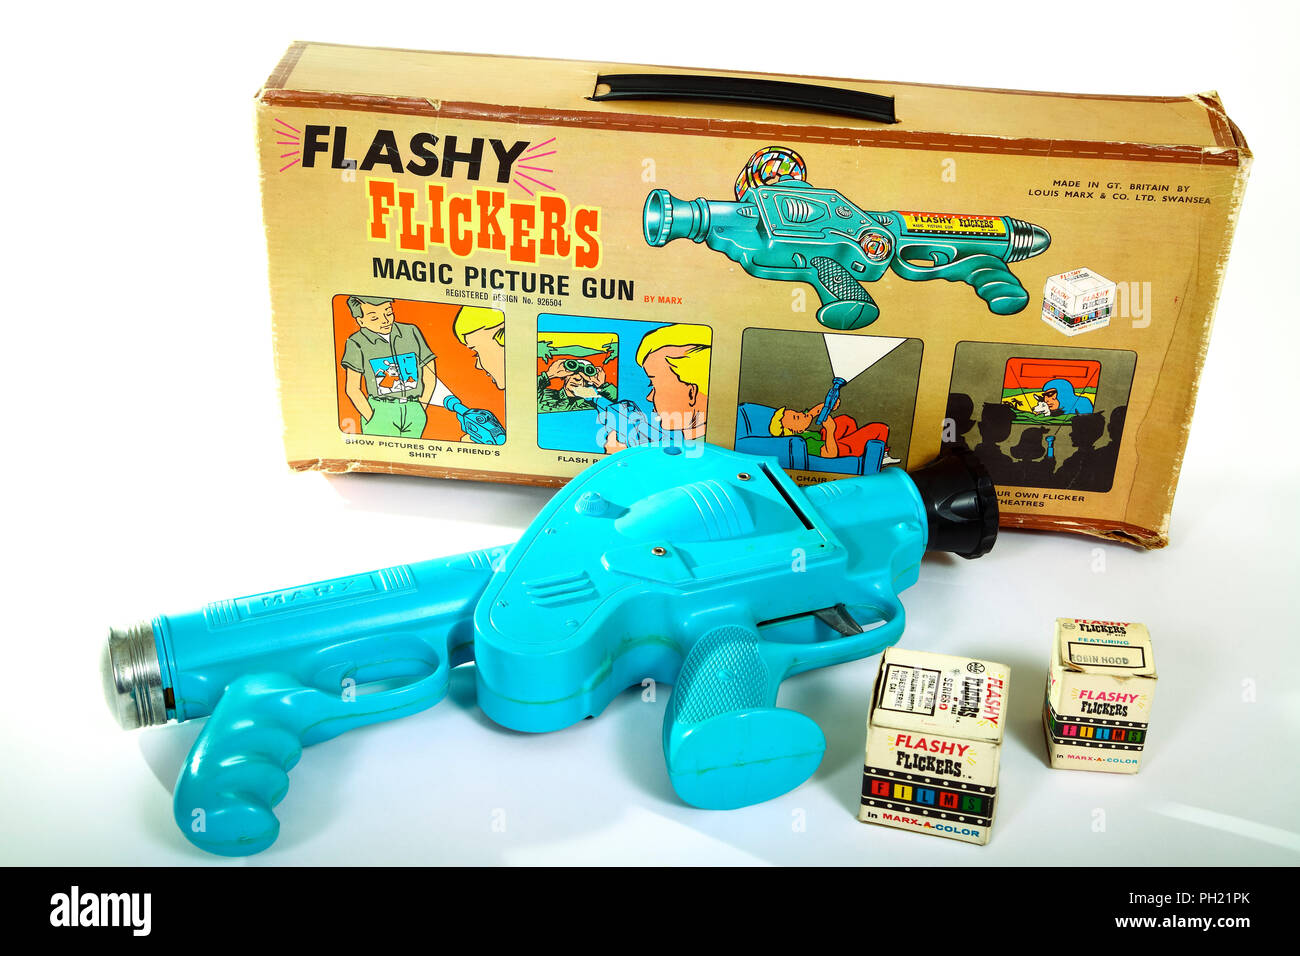 Marx Vintage Toys appariscenti sfarfalla magic immagine pistola giocattolo a partire dagli anni sessanta-1970s Foto Stock